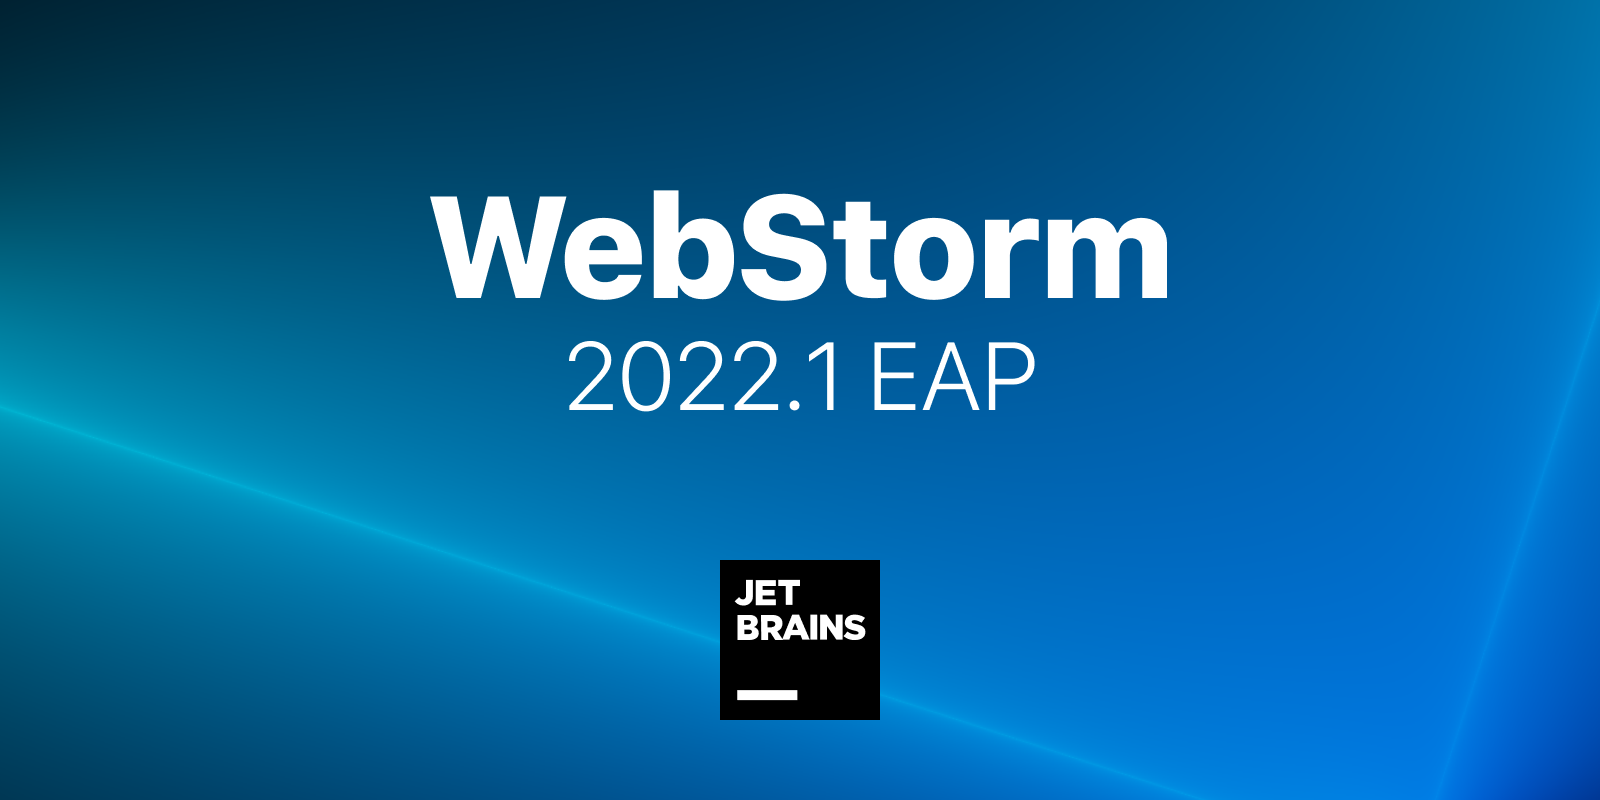 webstorm-2022-1